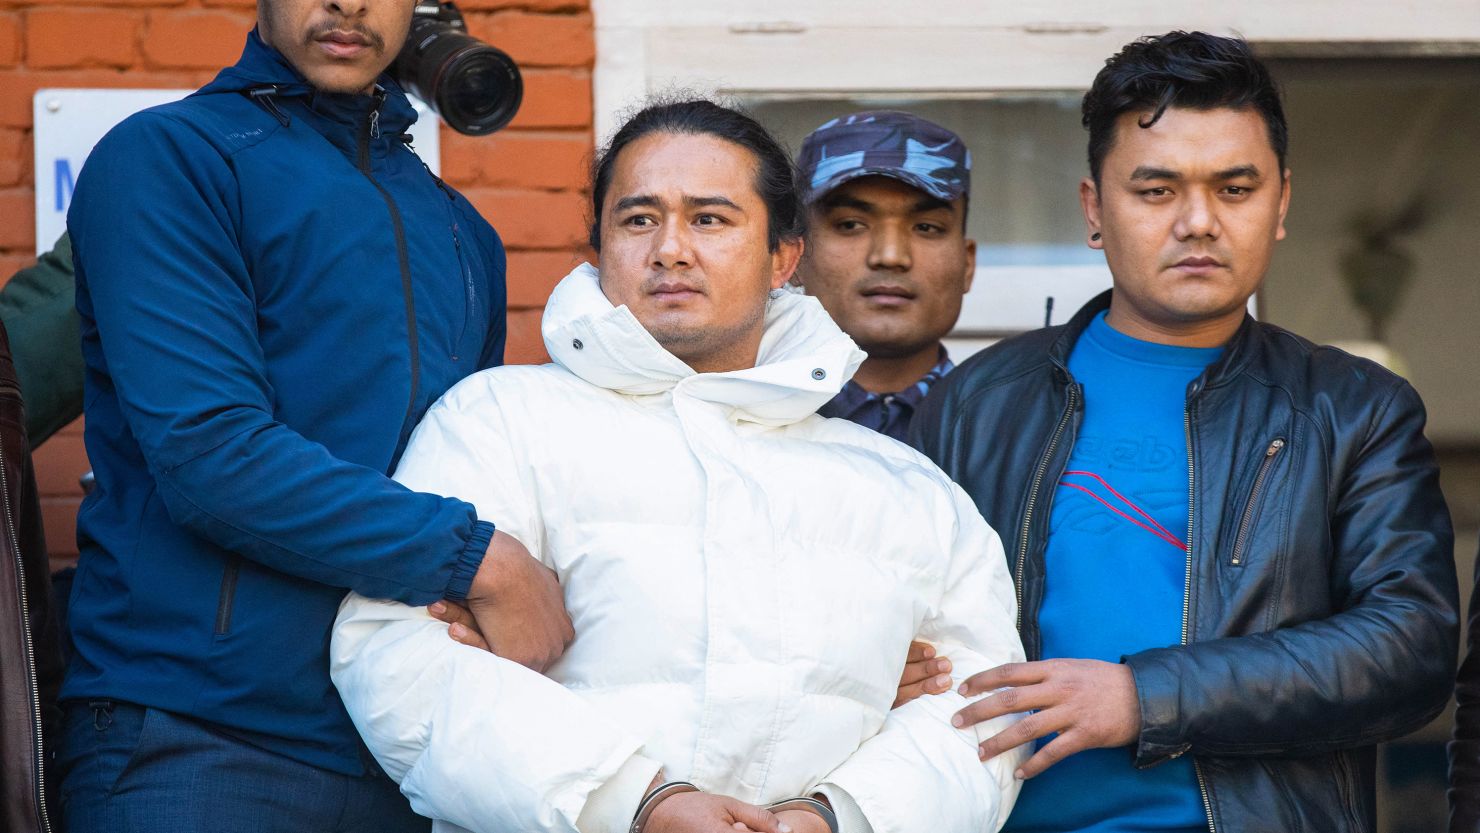 "Cậu bé Phật" bị bắt ở Nepal vì cáo buộc lạm dụng tình dục| Tân Thế Kỷ